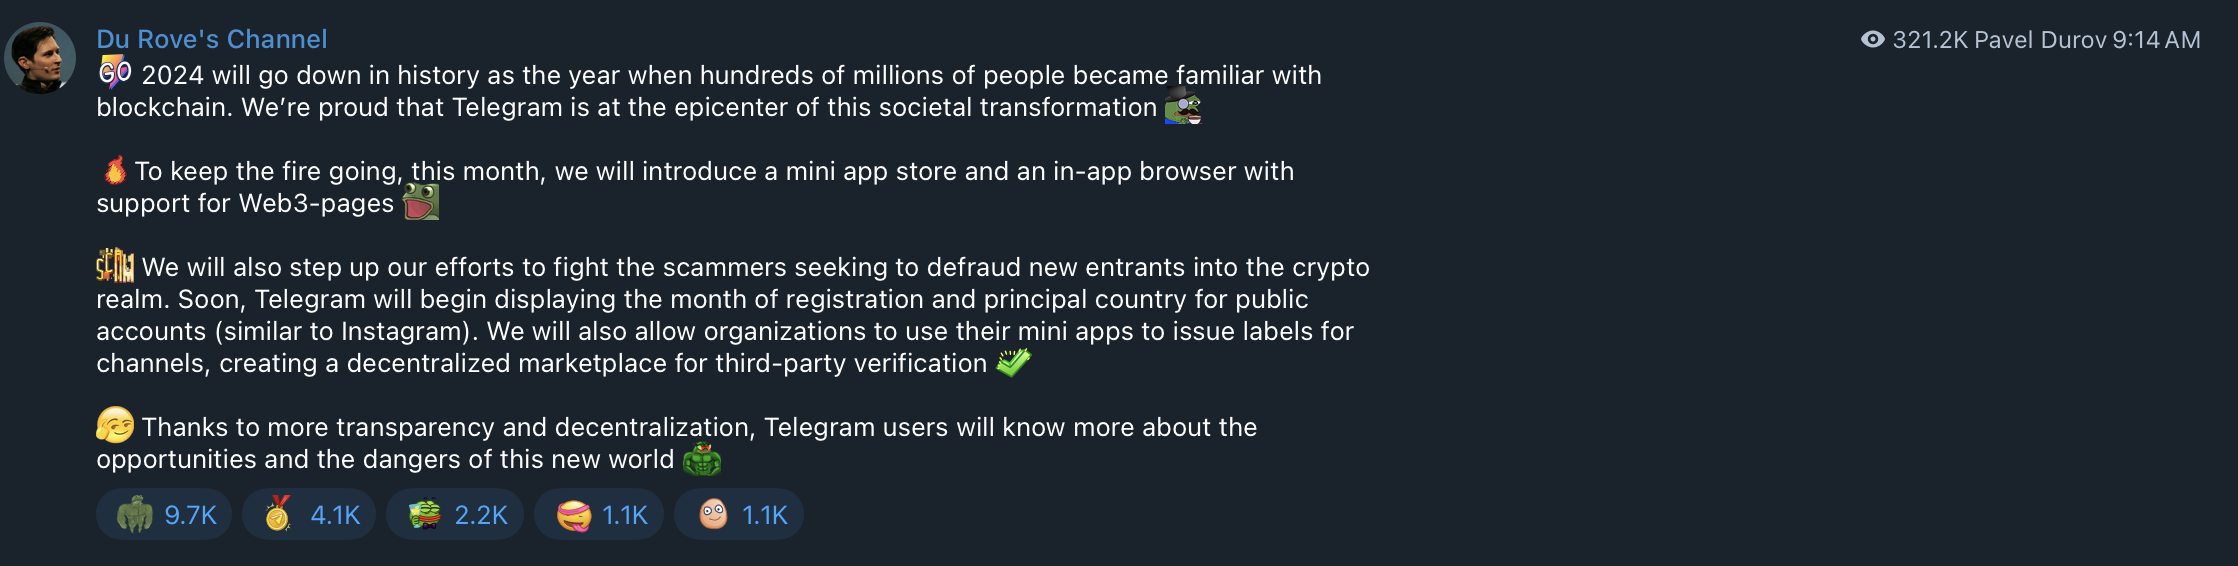 Telegram sẽ ra mắt cửa hàng ứng dụng nhỏ trong tháng 7, Pavel Durov công bố